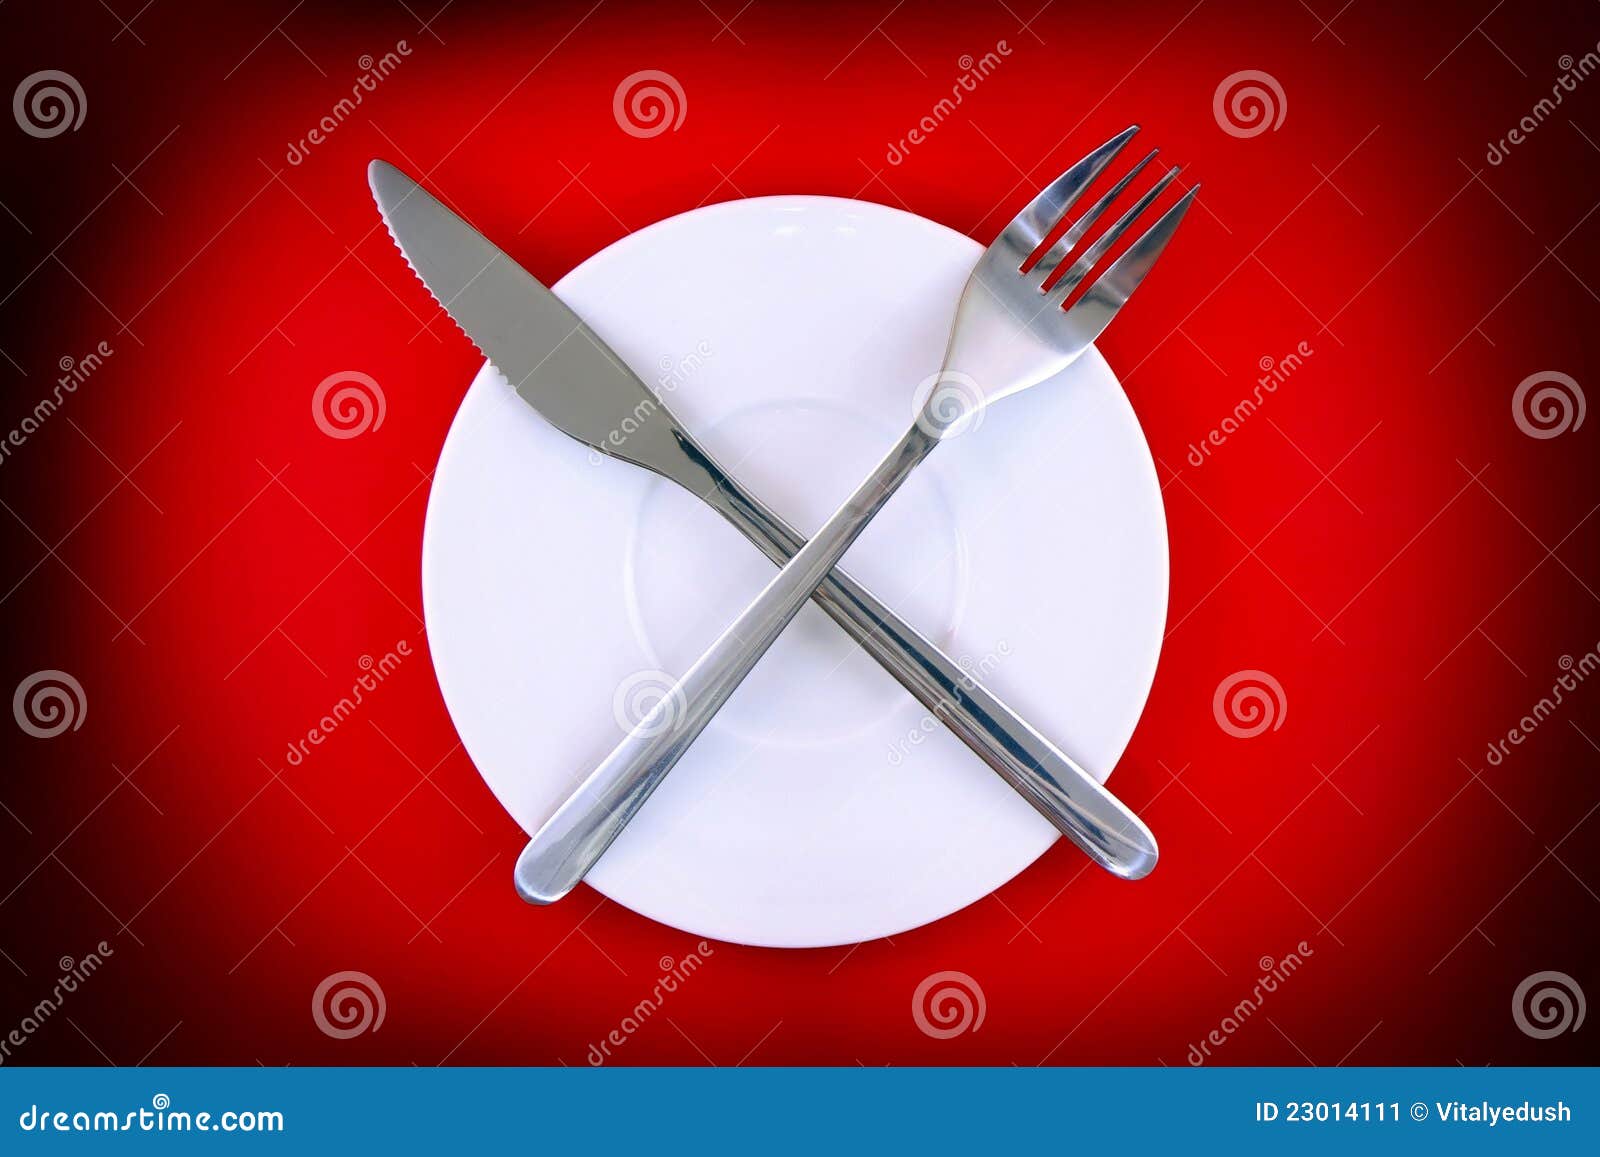 На тарелке лежат красные. Вилка лежит тарелка стоит. Тарелка стоит на столе а вилка лежит. Человек лежит на тарелке. Язык на тарелке.